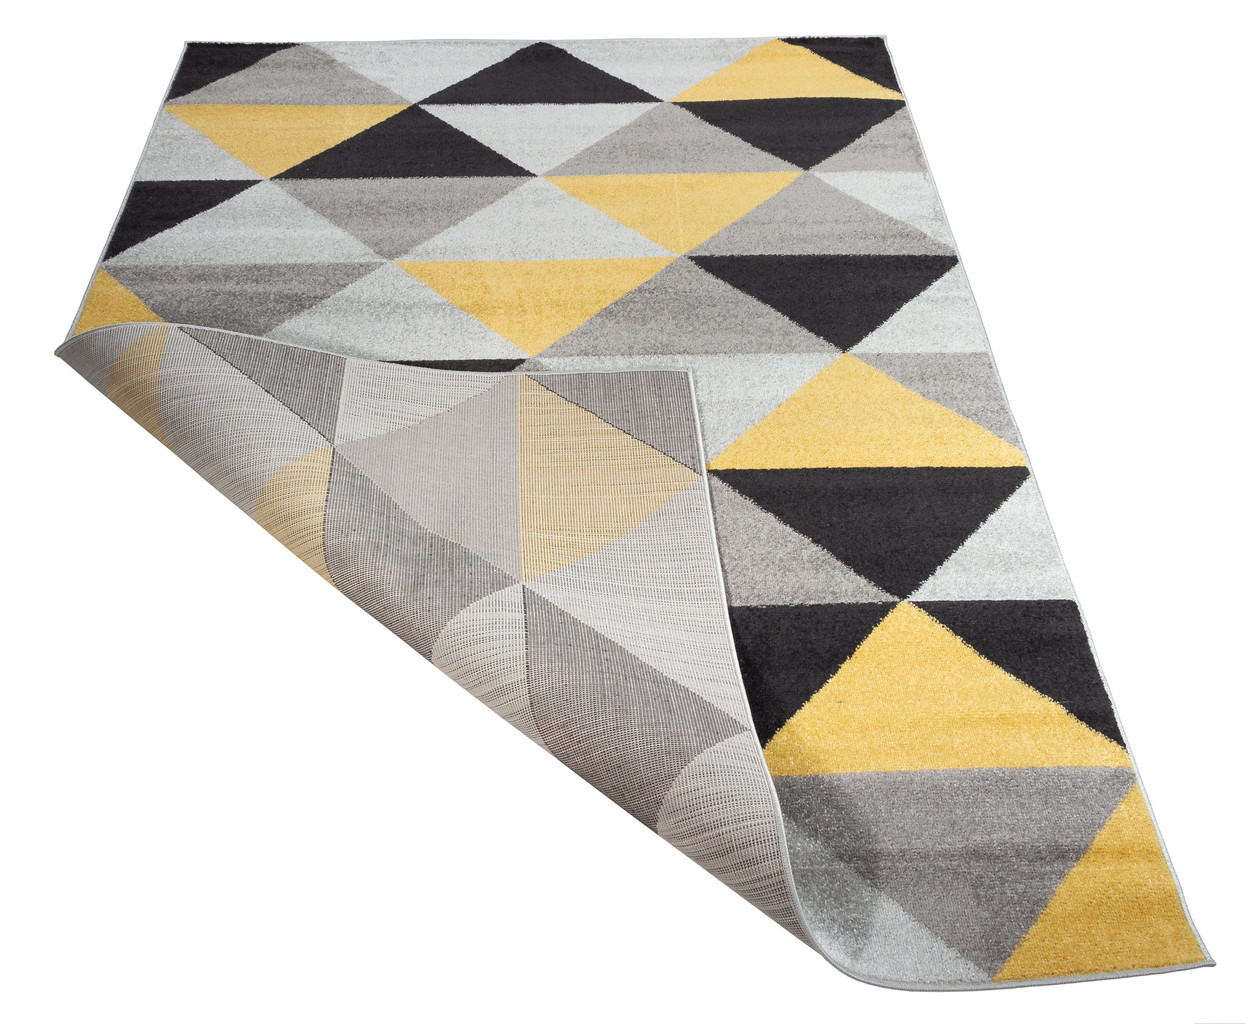 Kolorowy dywan do pokoju w trójkąty szare, czarne, żółte Desert Stream 07 - Carpetforyou zdjęcie 3